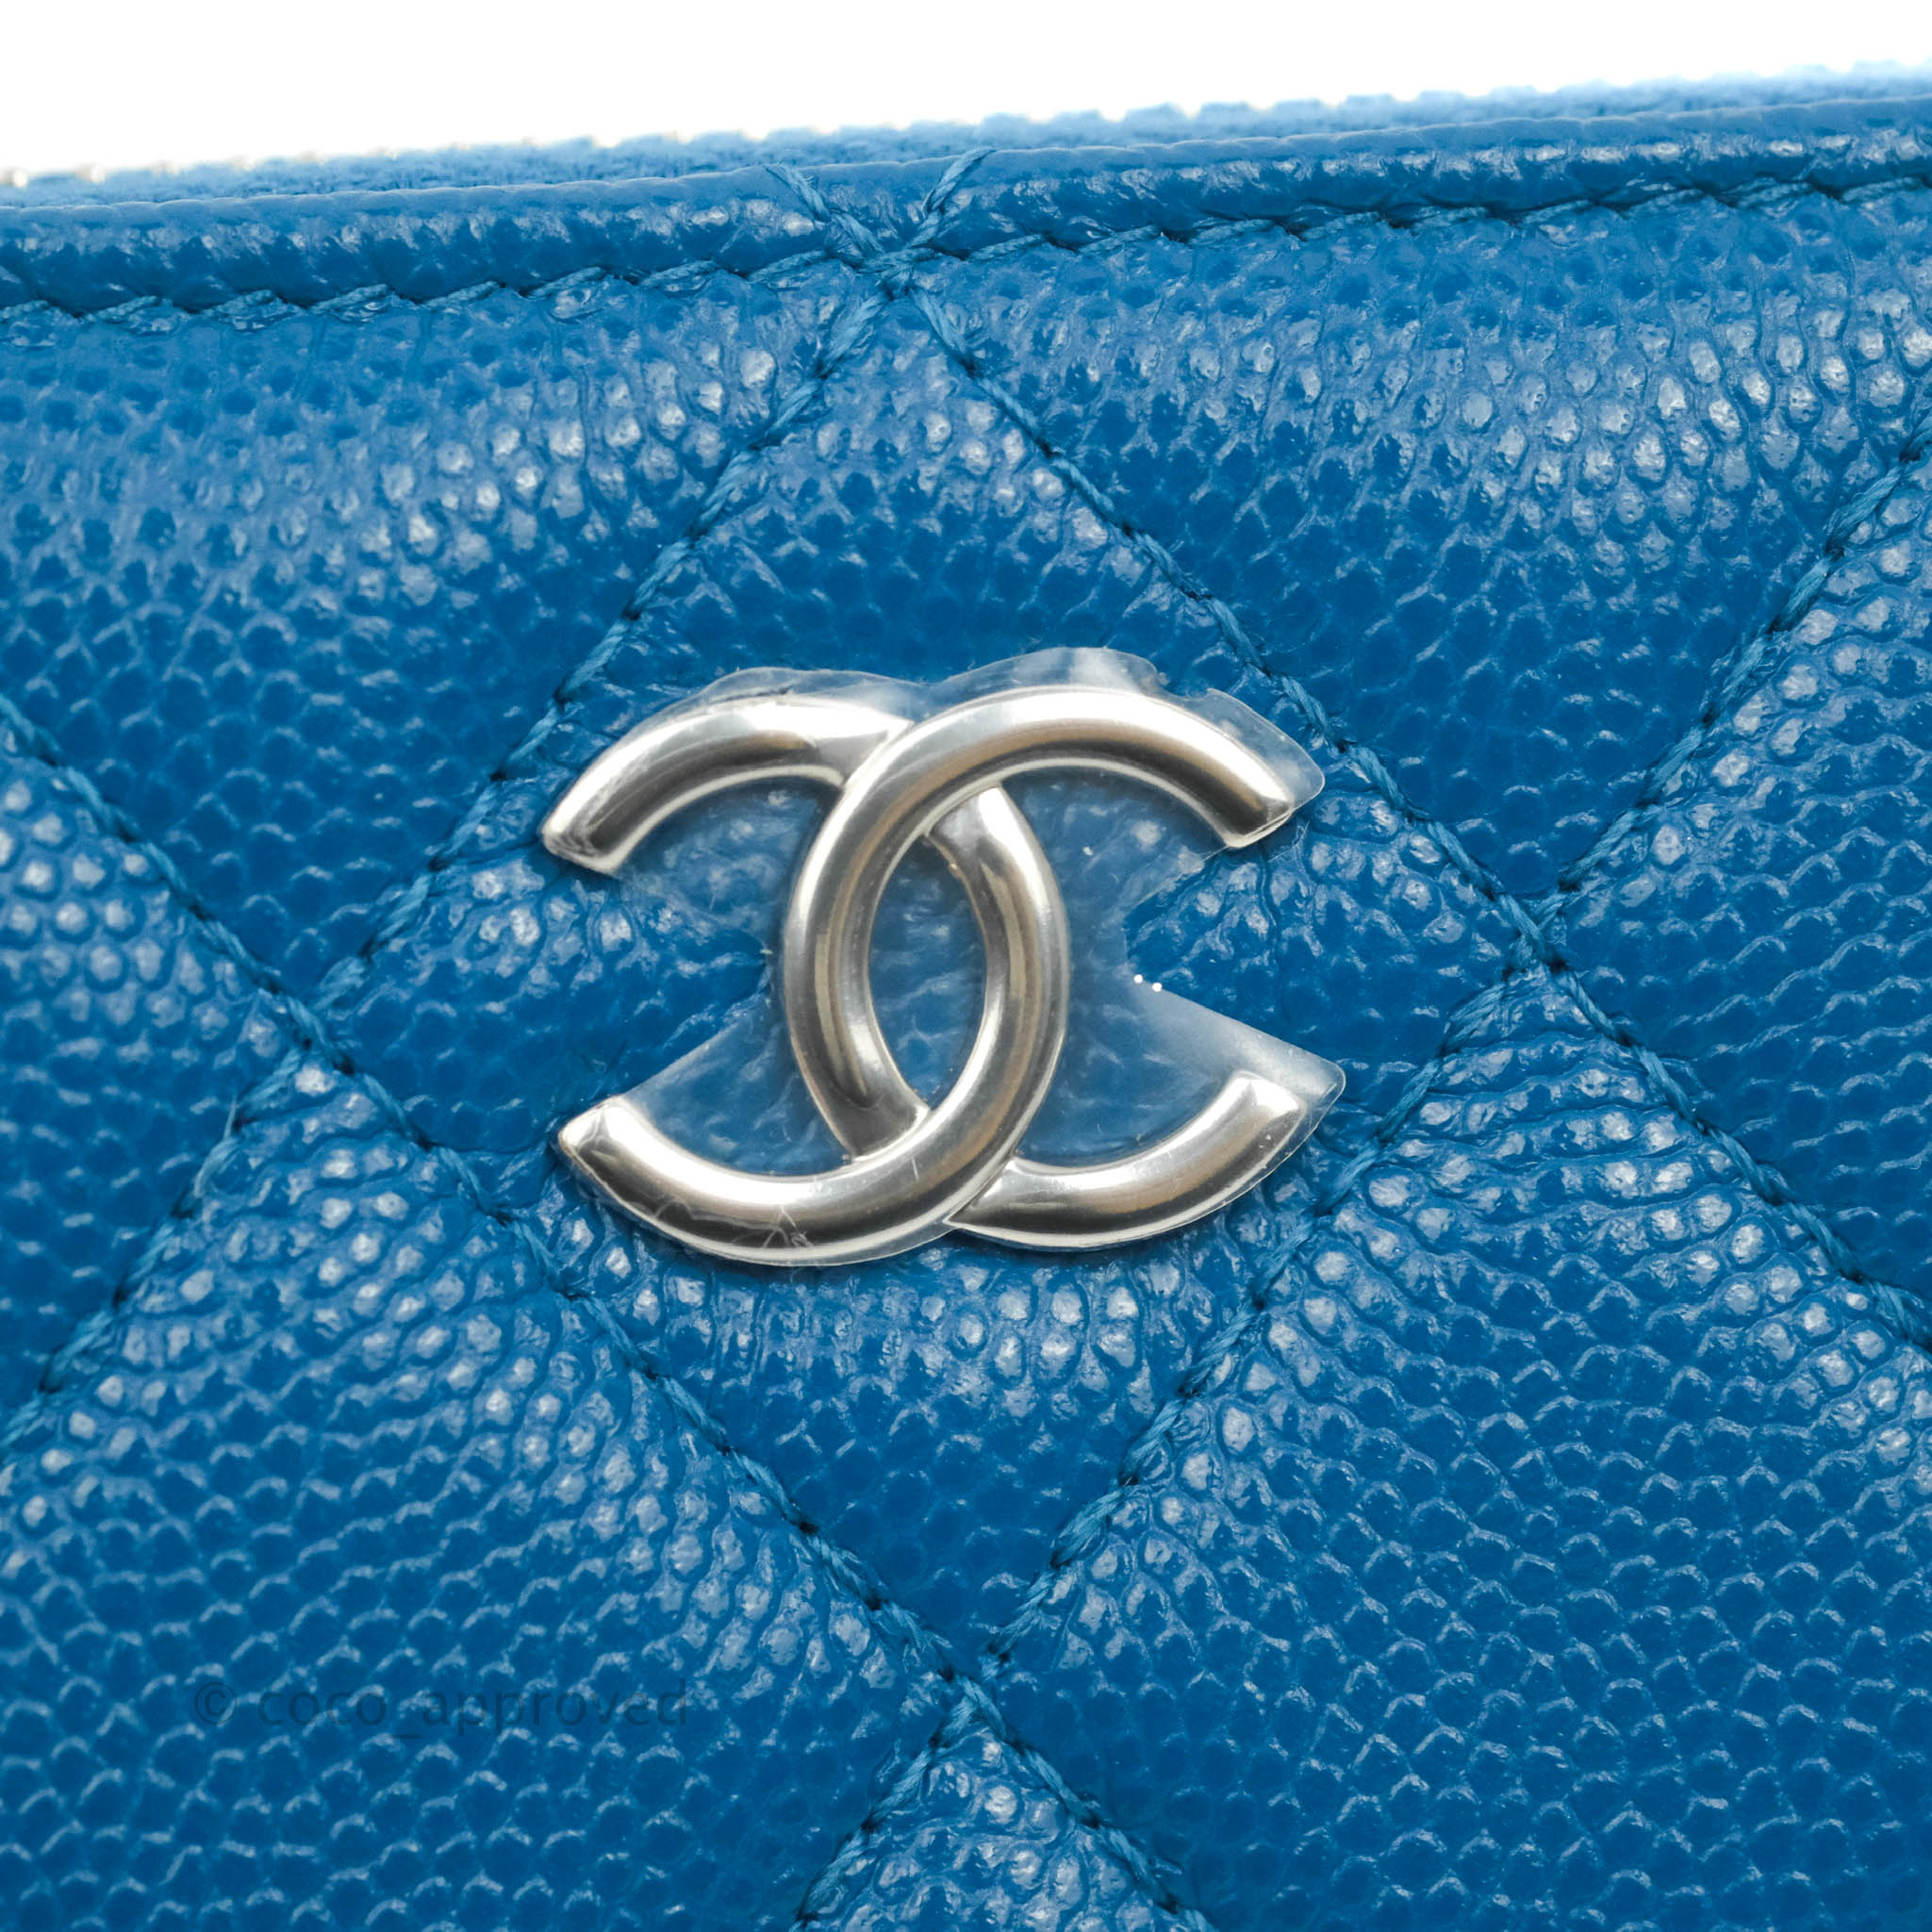 9️⃣0️⃣0️⃣ Chanel classic zipped coin purse